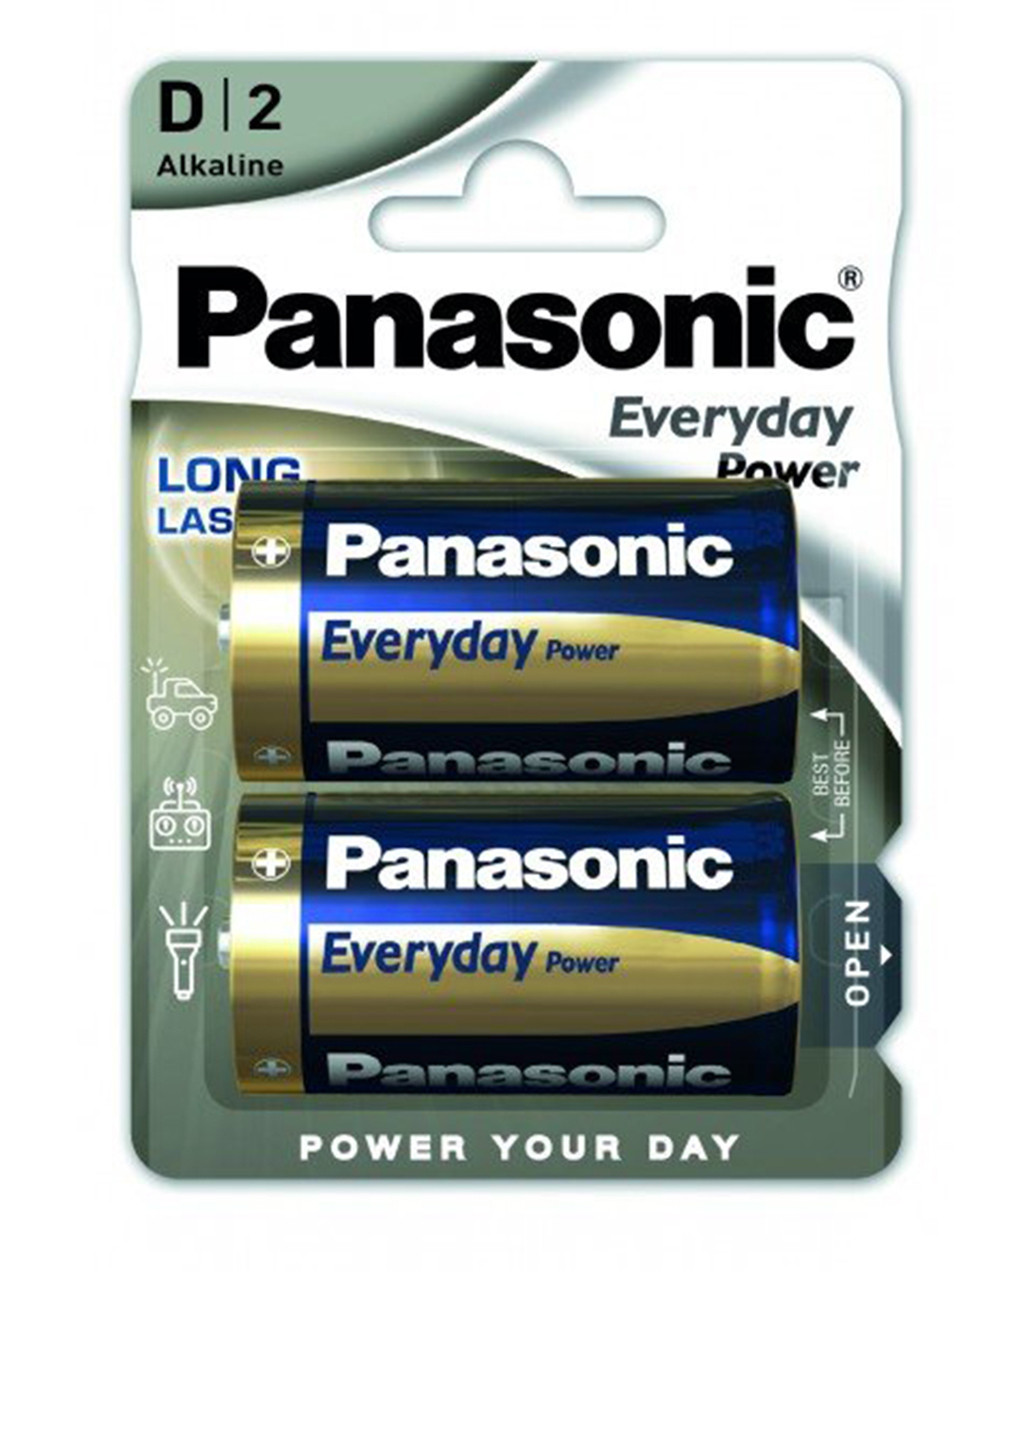 Батарейка EVERYDAY POWER D BLI 2 ALKALINE (LR20REE / 2BR) Panasonic everyday power d bli 2 alkaline (lr20ree/2br) (138004337)